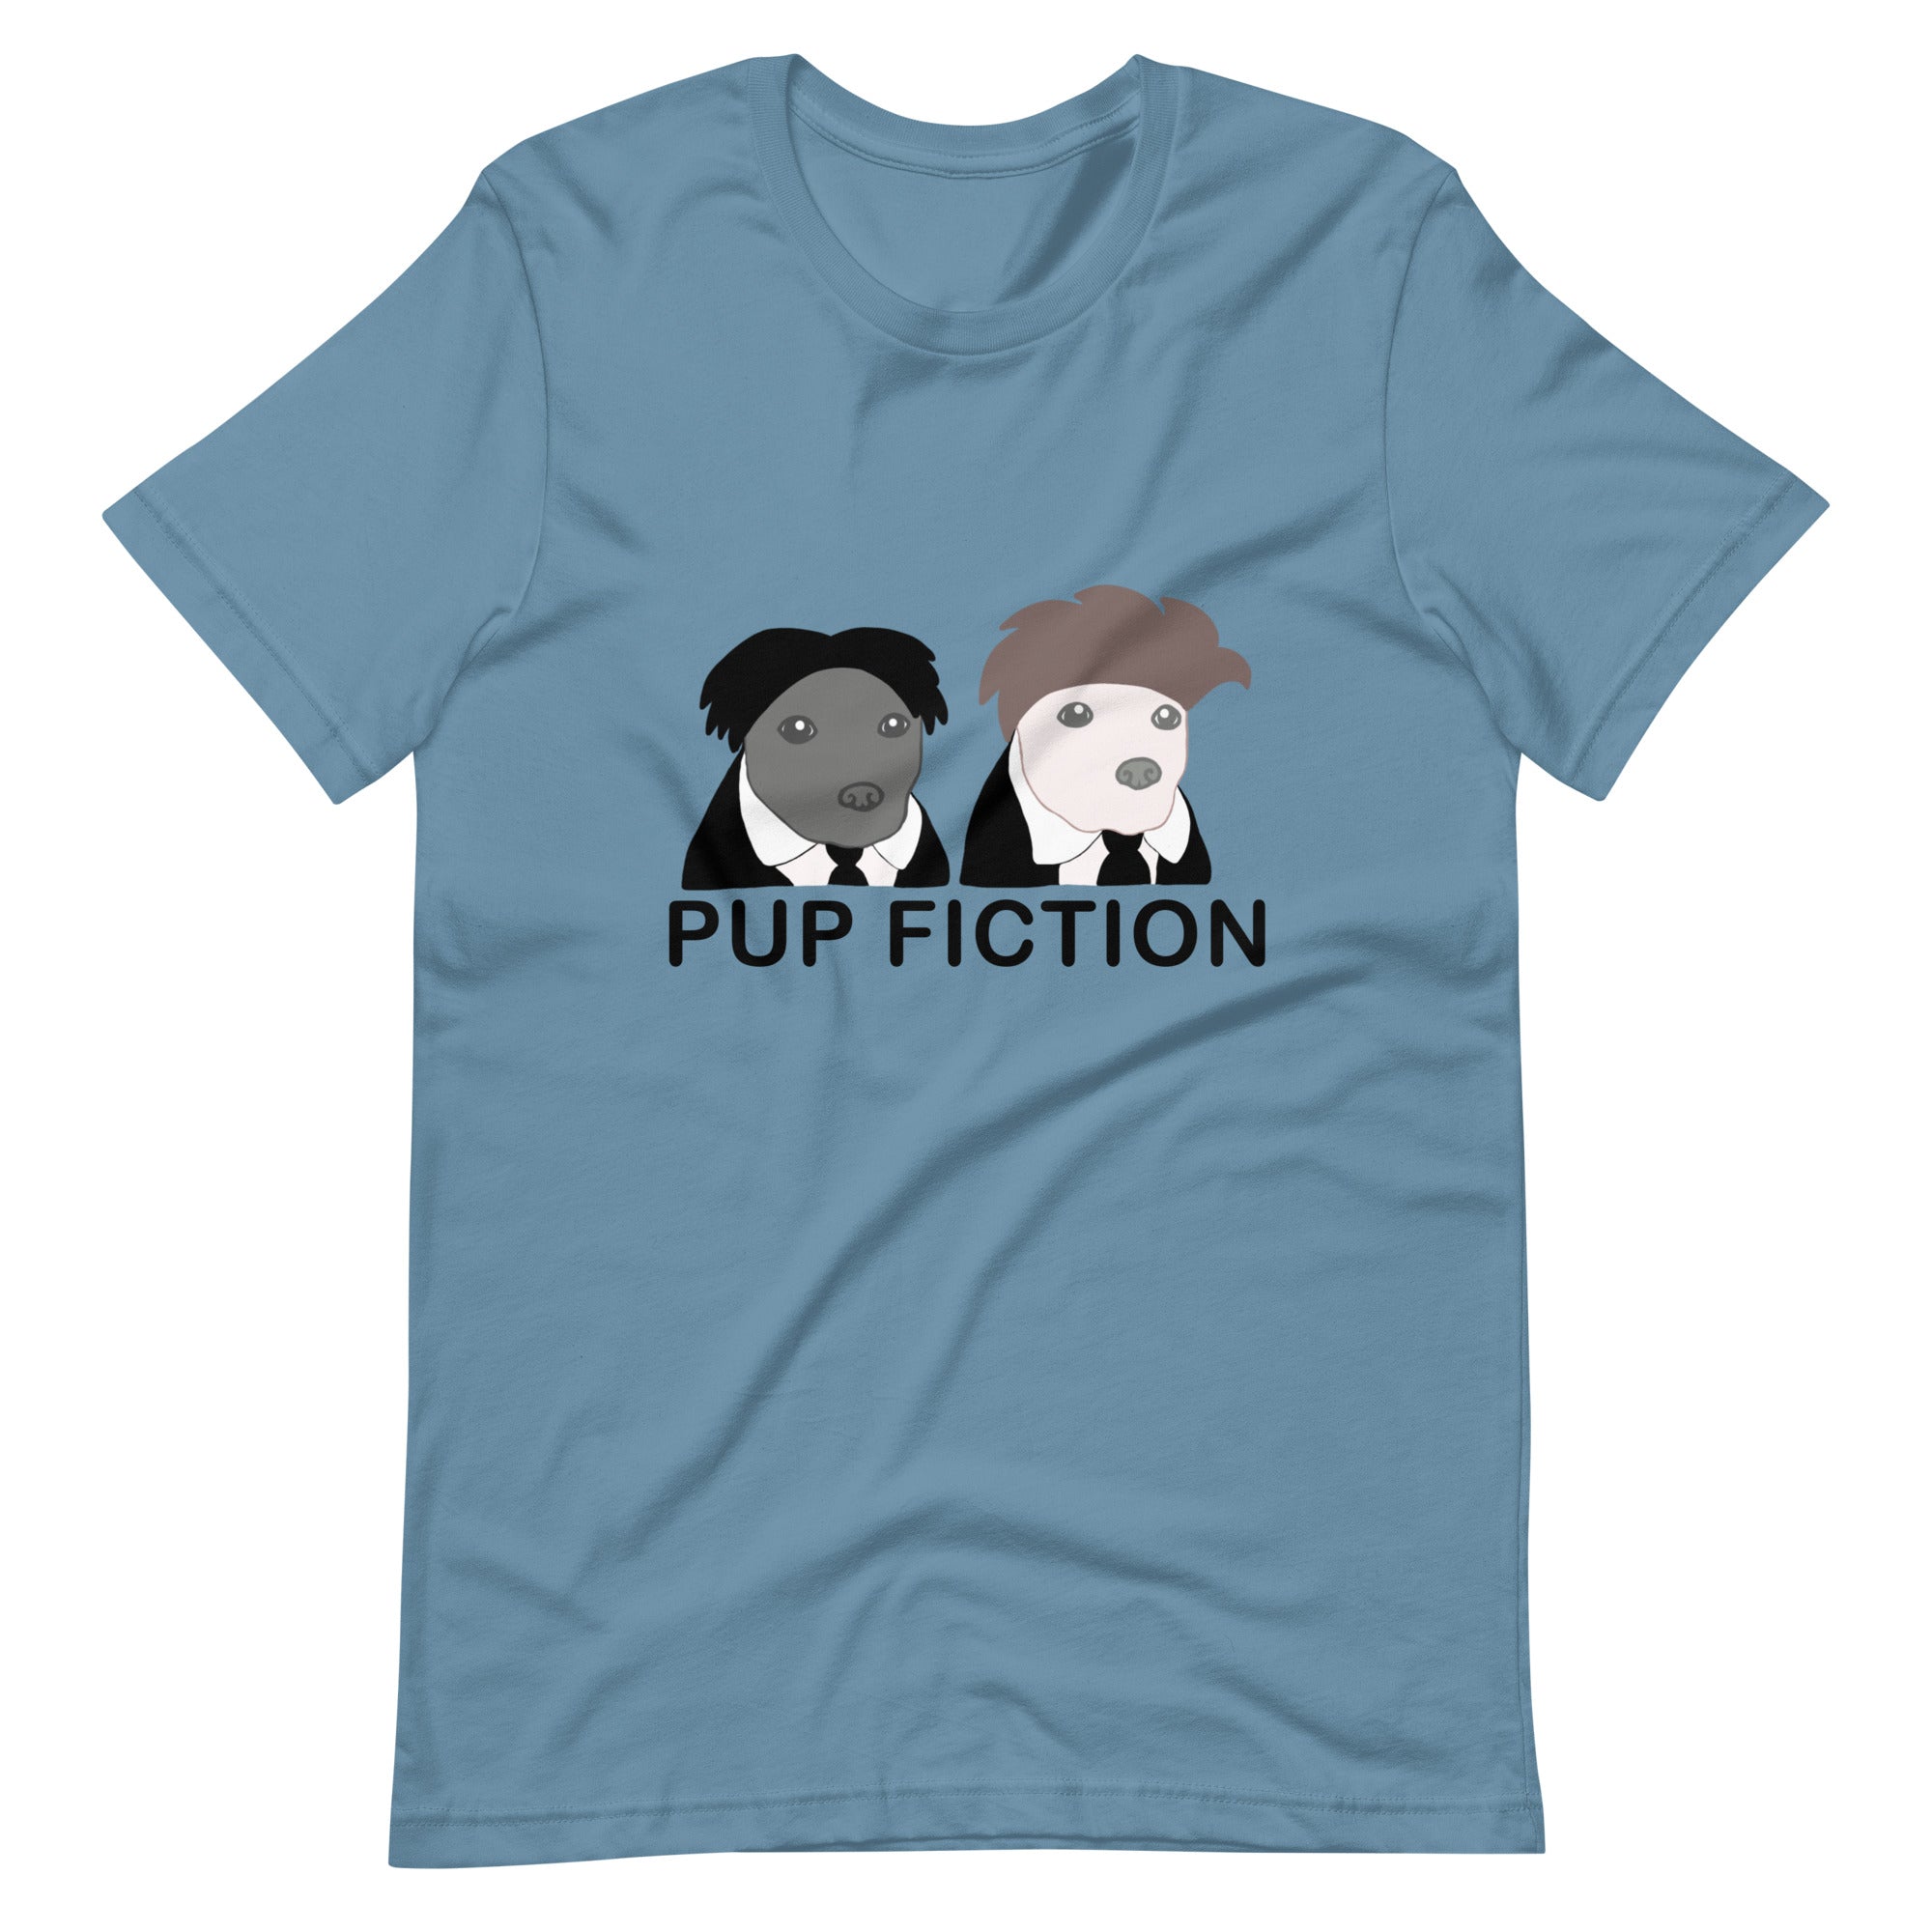 "Pup Fiction" Adult Unisex t-shirt